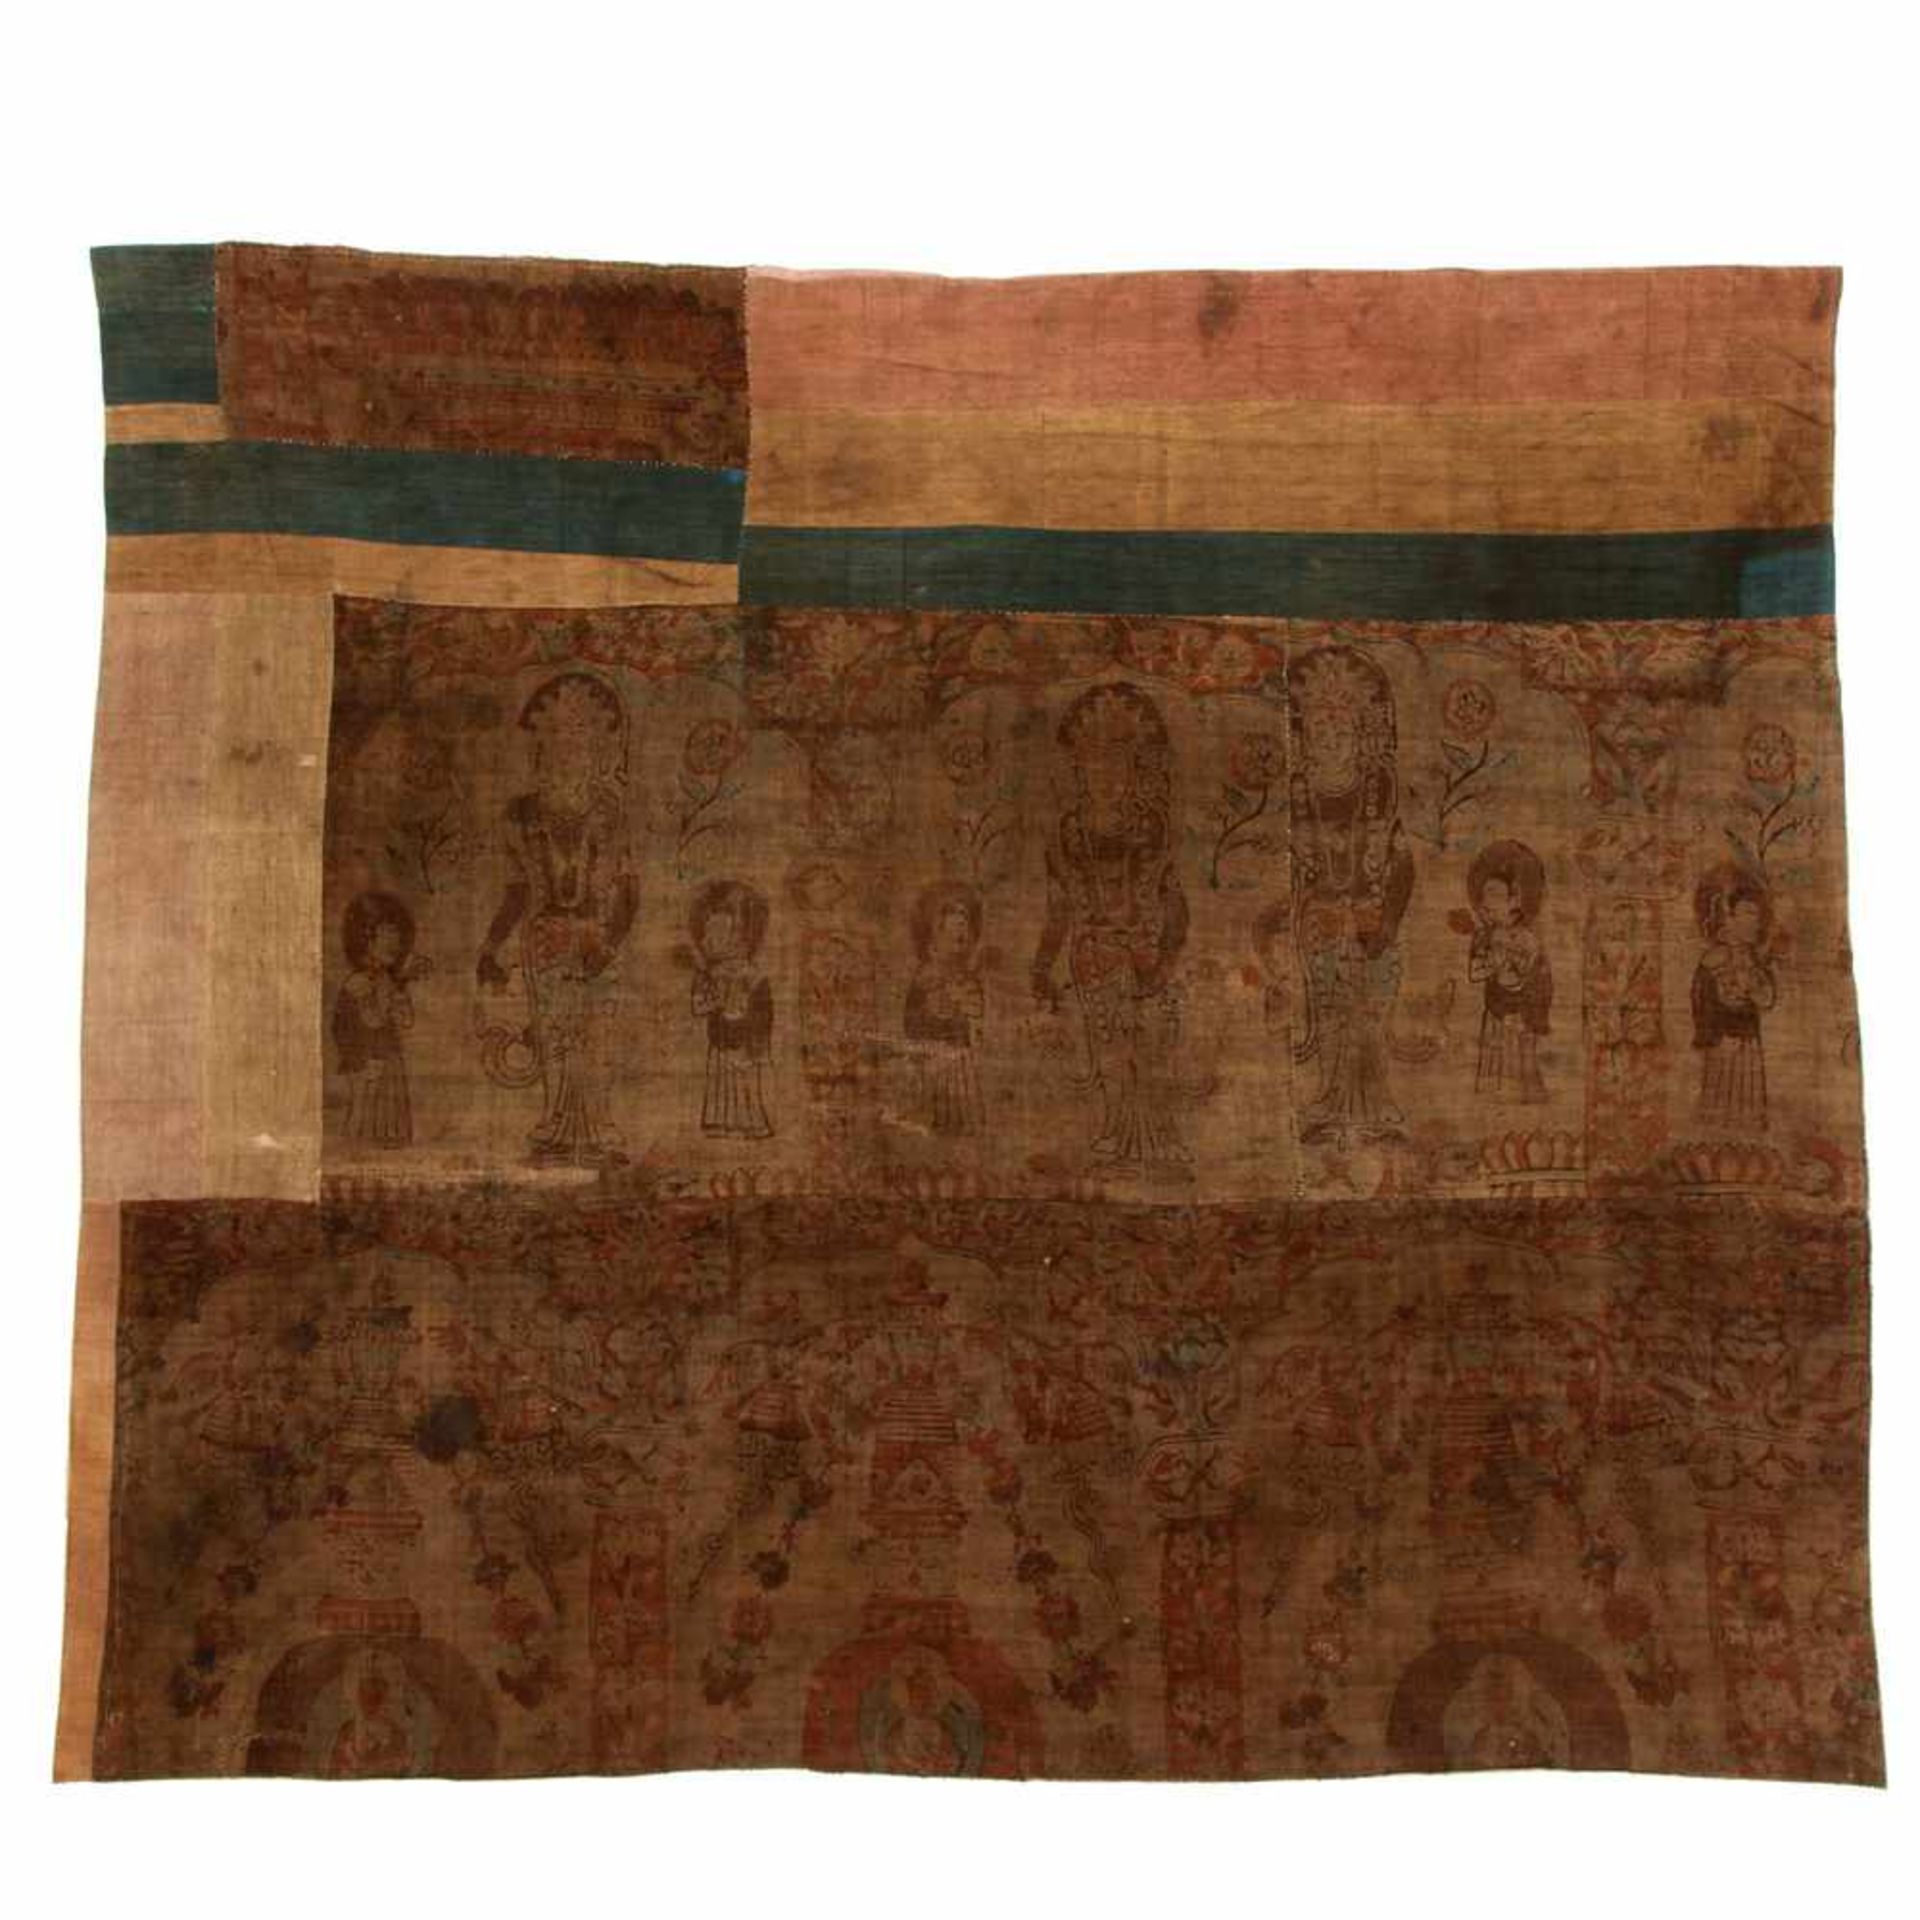 China, twee beschilderde antieke katoenen doeken,uit samengestelde delen, een rand waarop drie